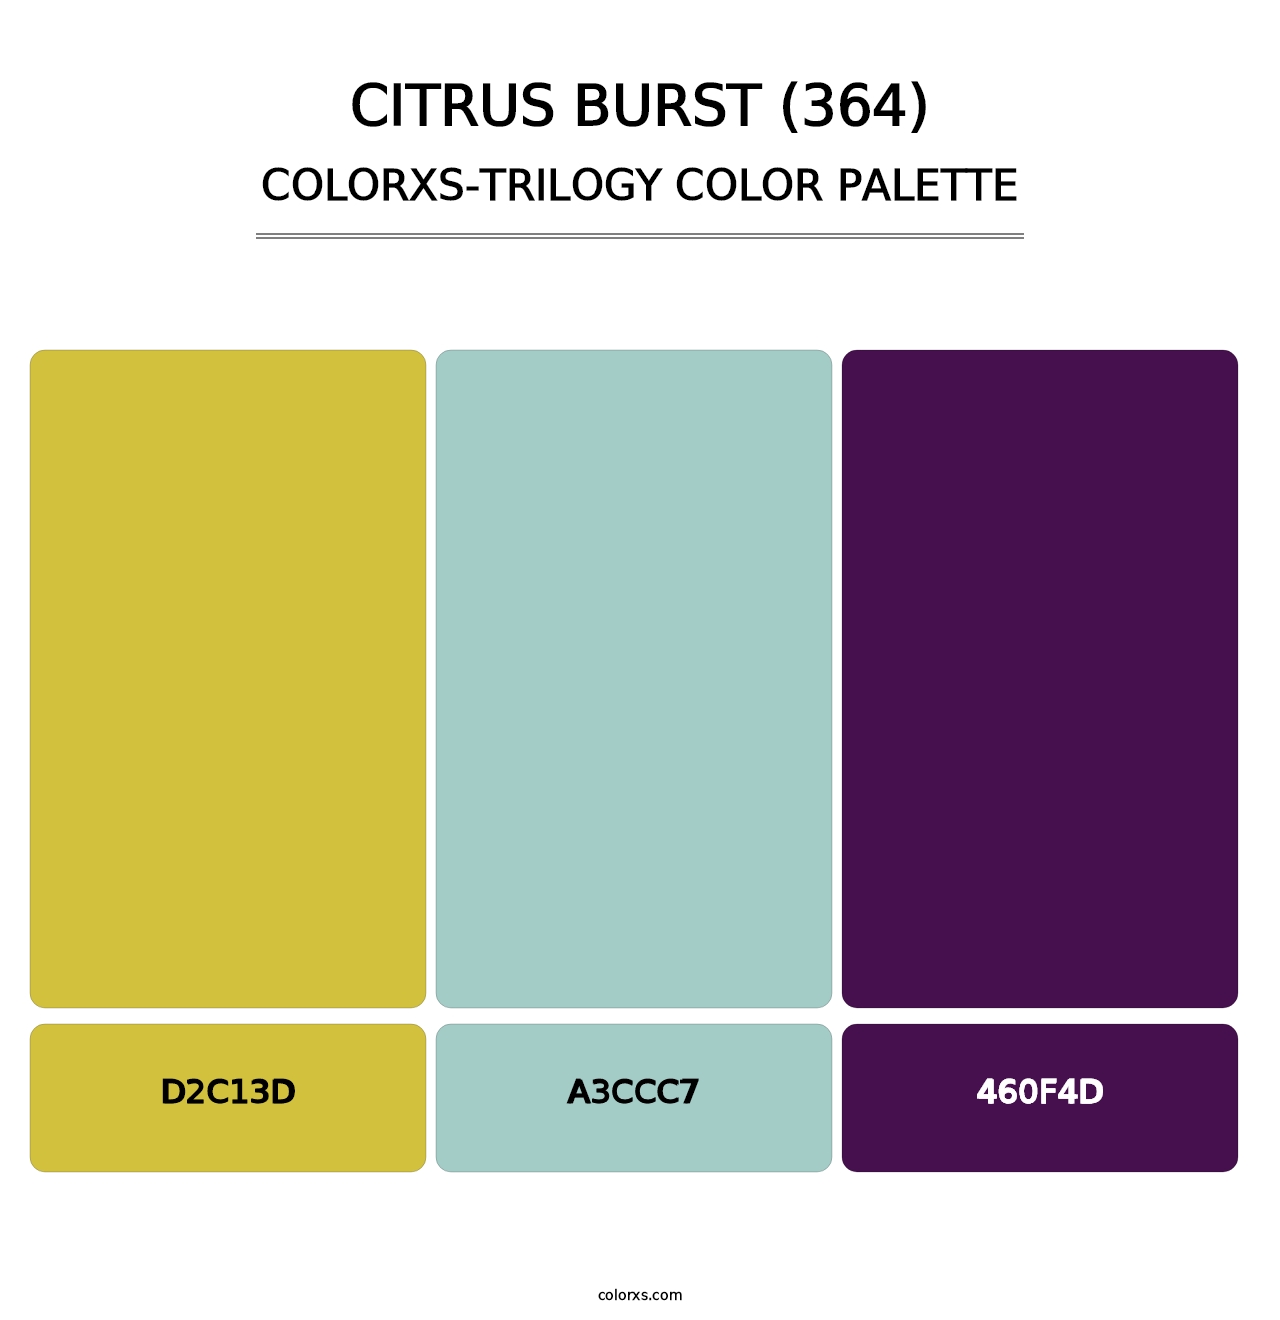 Citrus Burst (364) - Colorxs Trilogy Palette